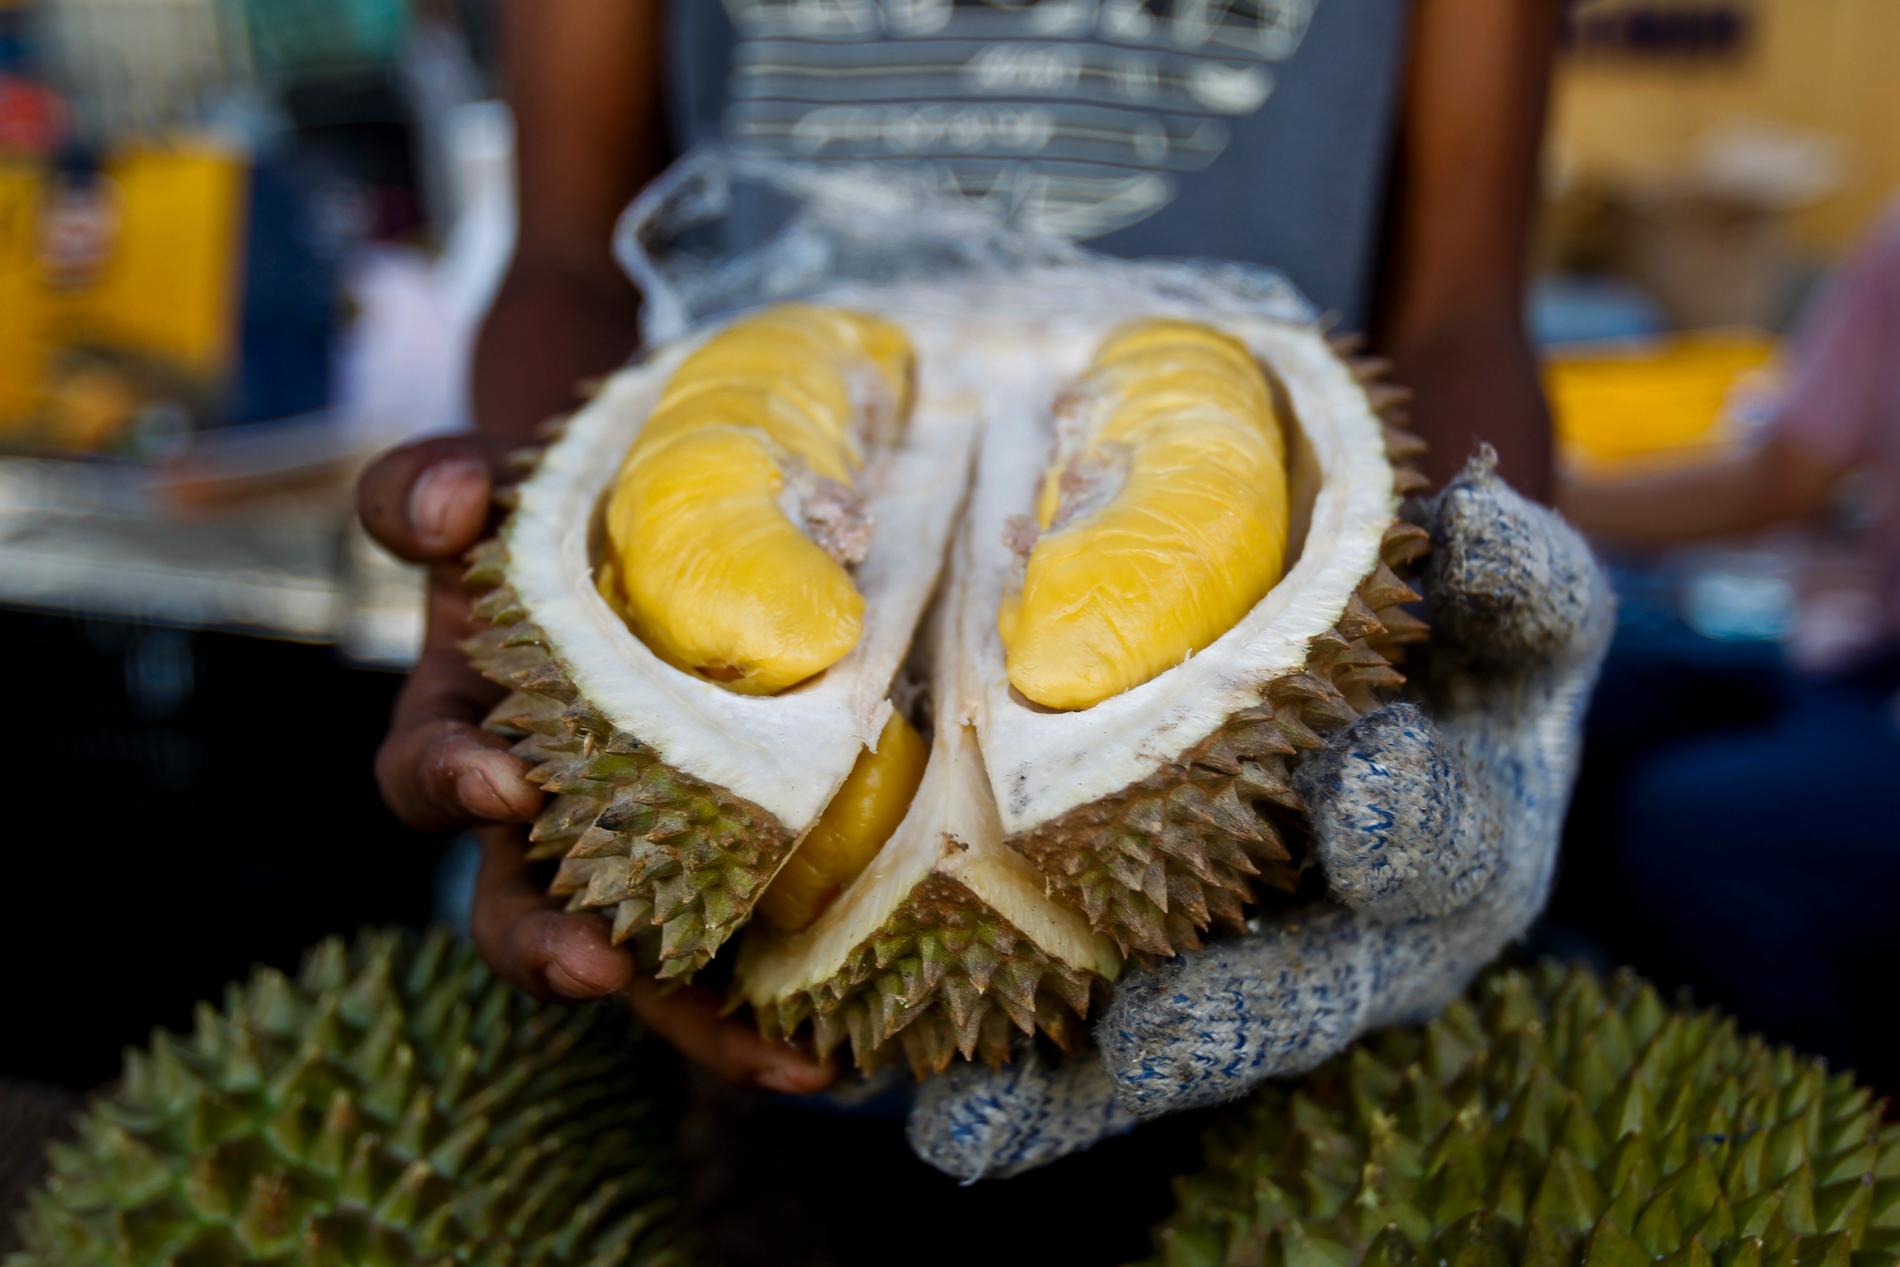 Skogs röjs undan i Malaysia för att odla mer durian, för att möta en stor kinesisk efterfrågan. Arkivbild.